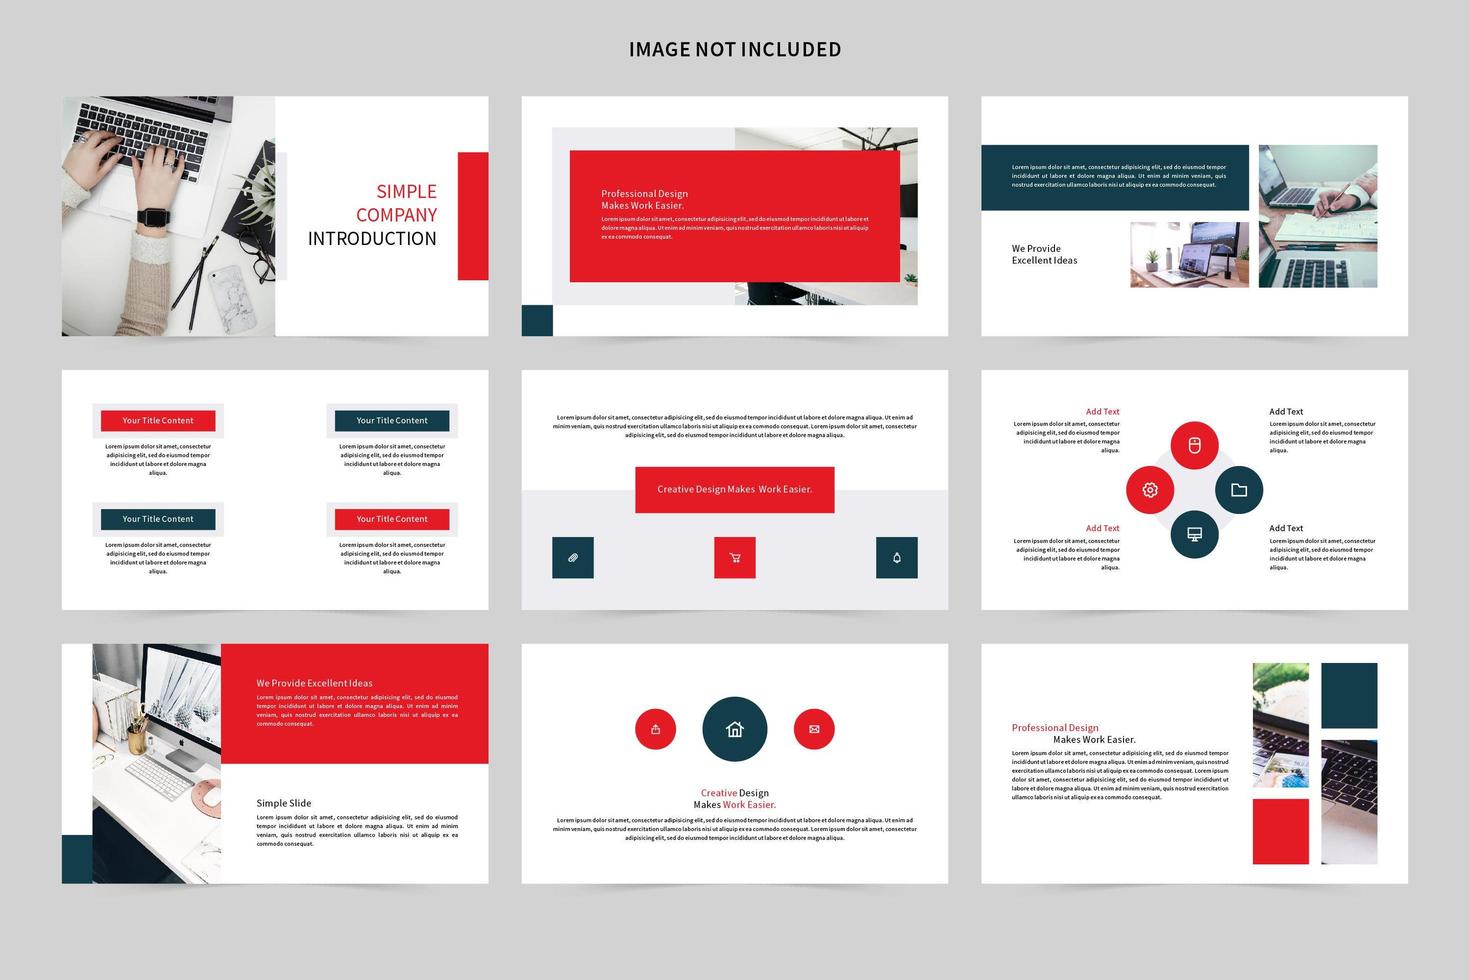 conjunto de slides de demonstração de introdução de empresa simples vetor